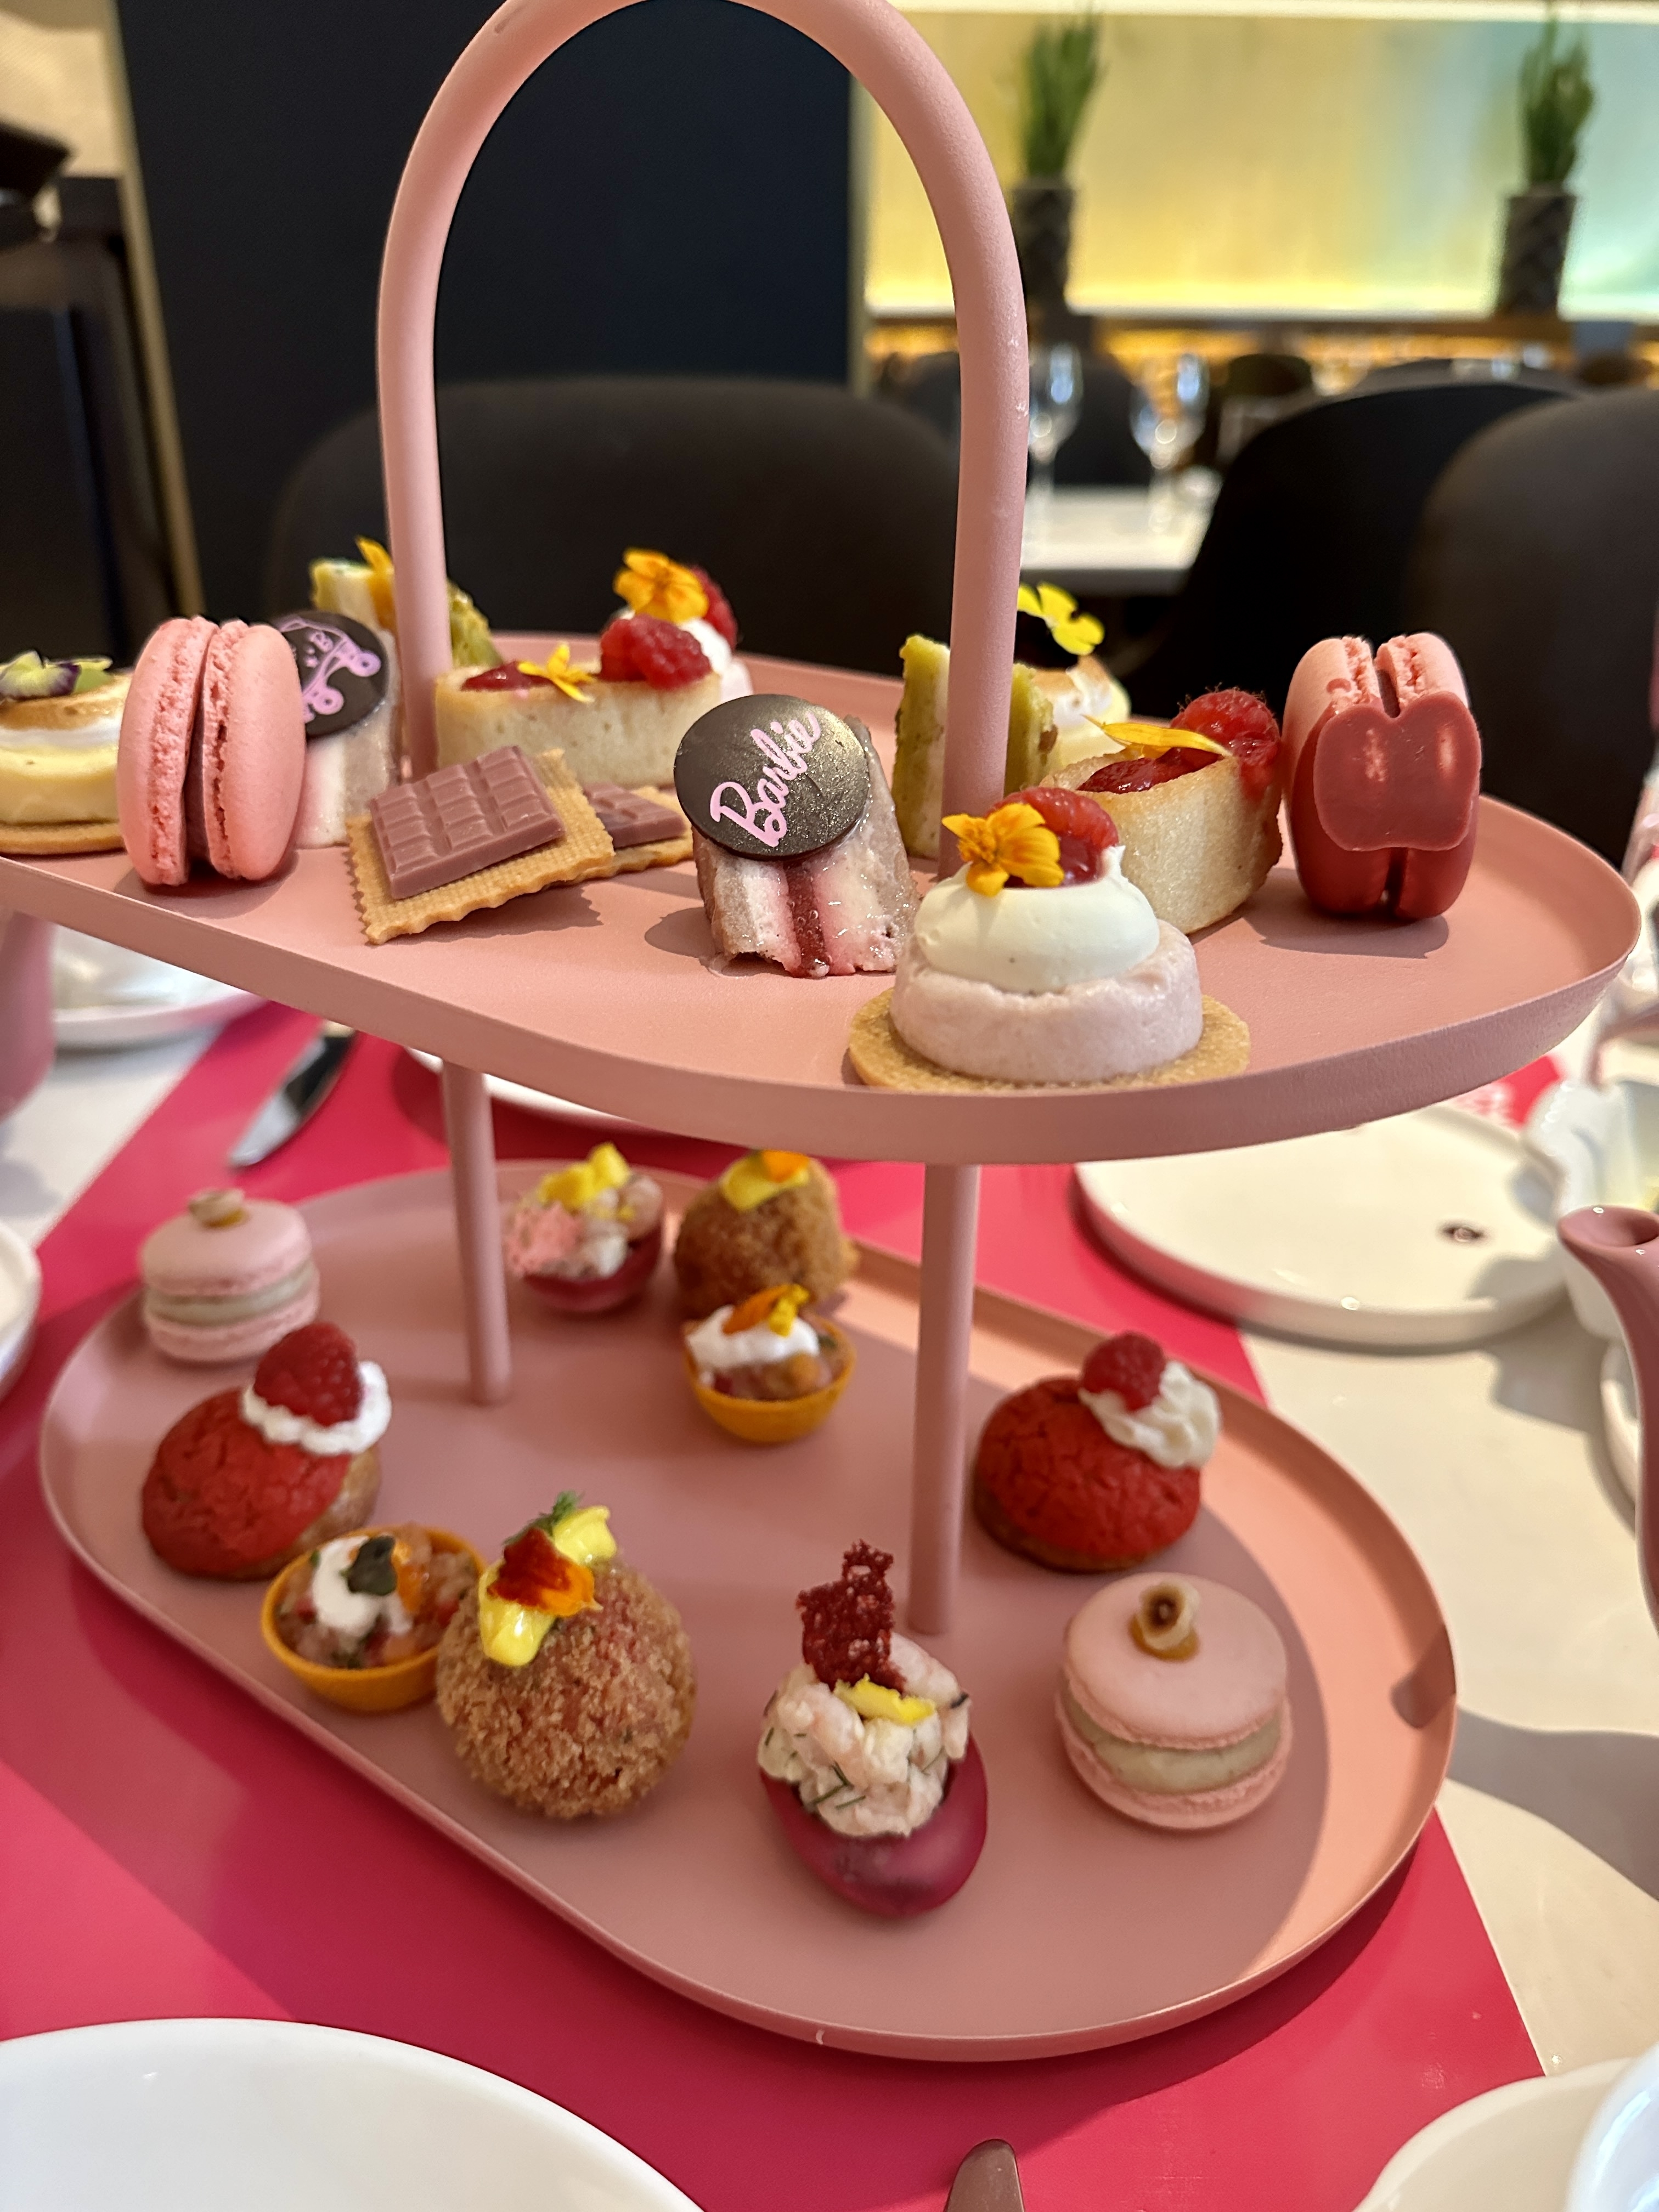 A tray of Barbie Themed treats